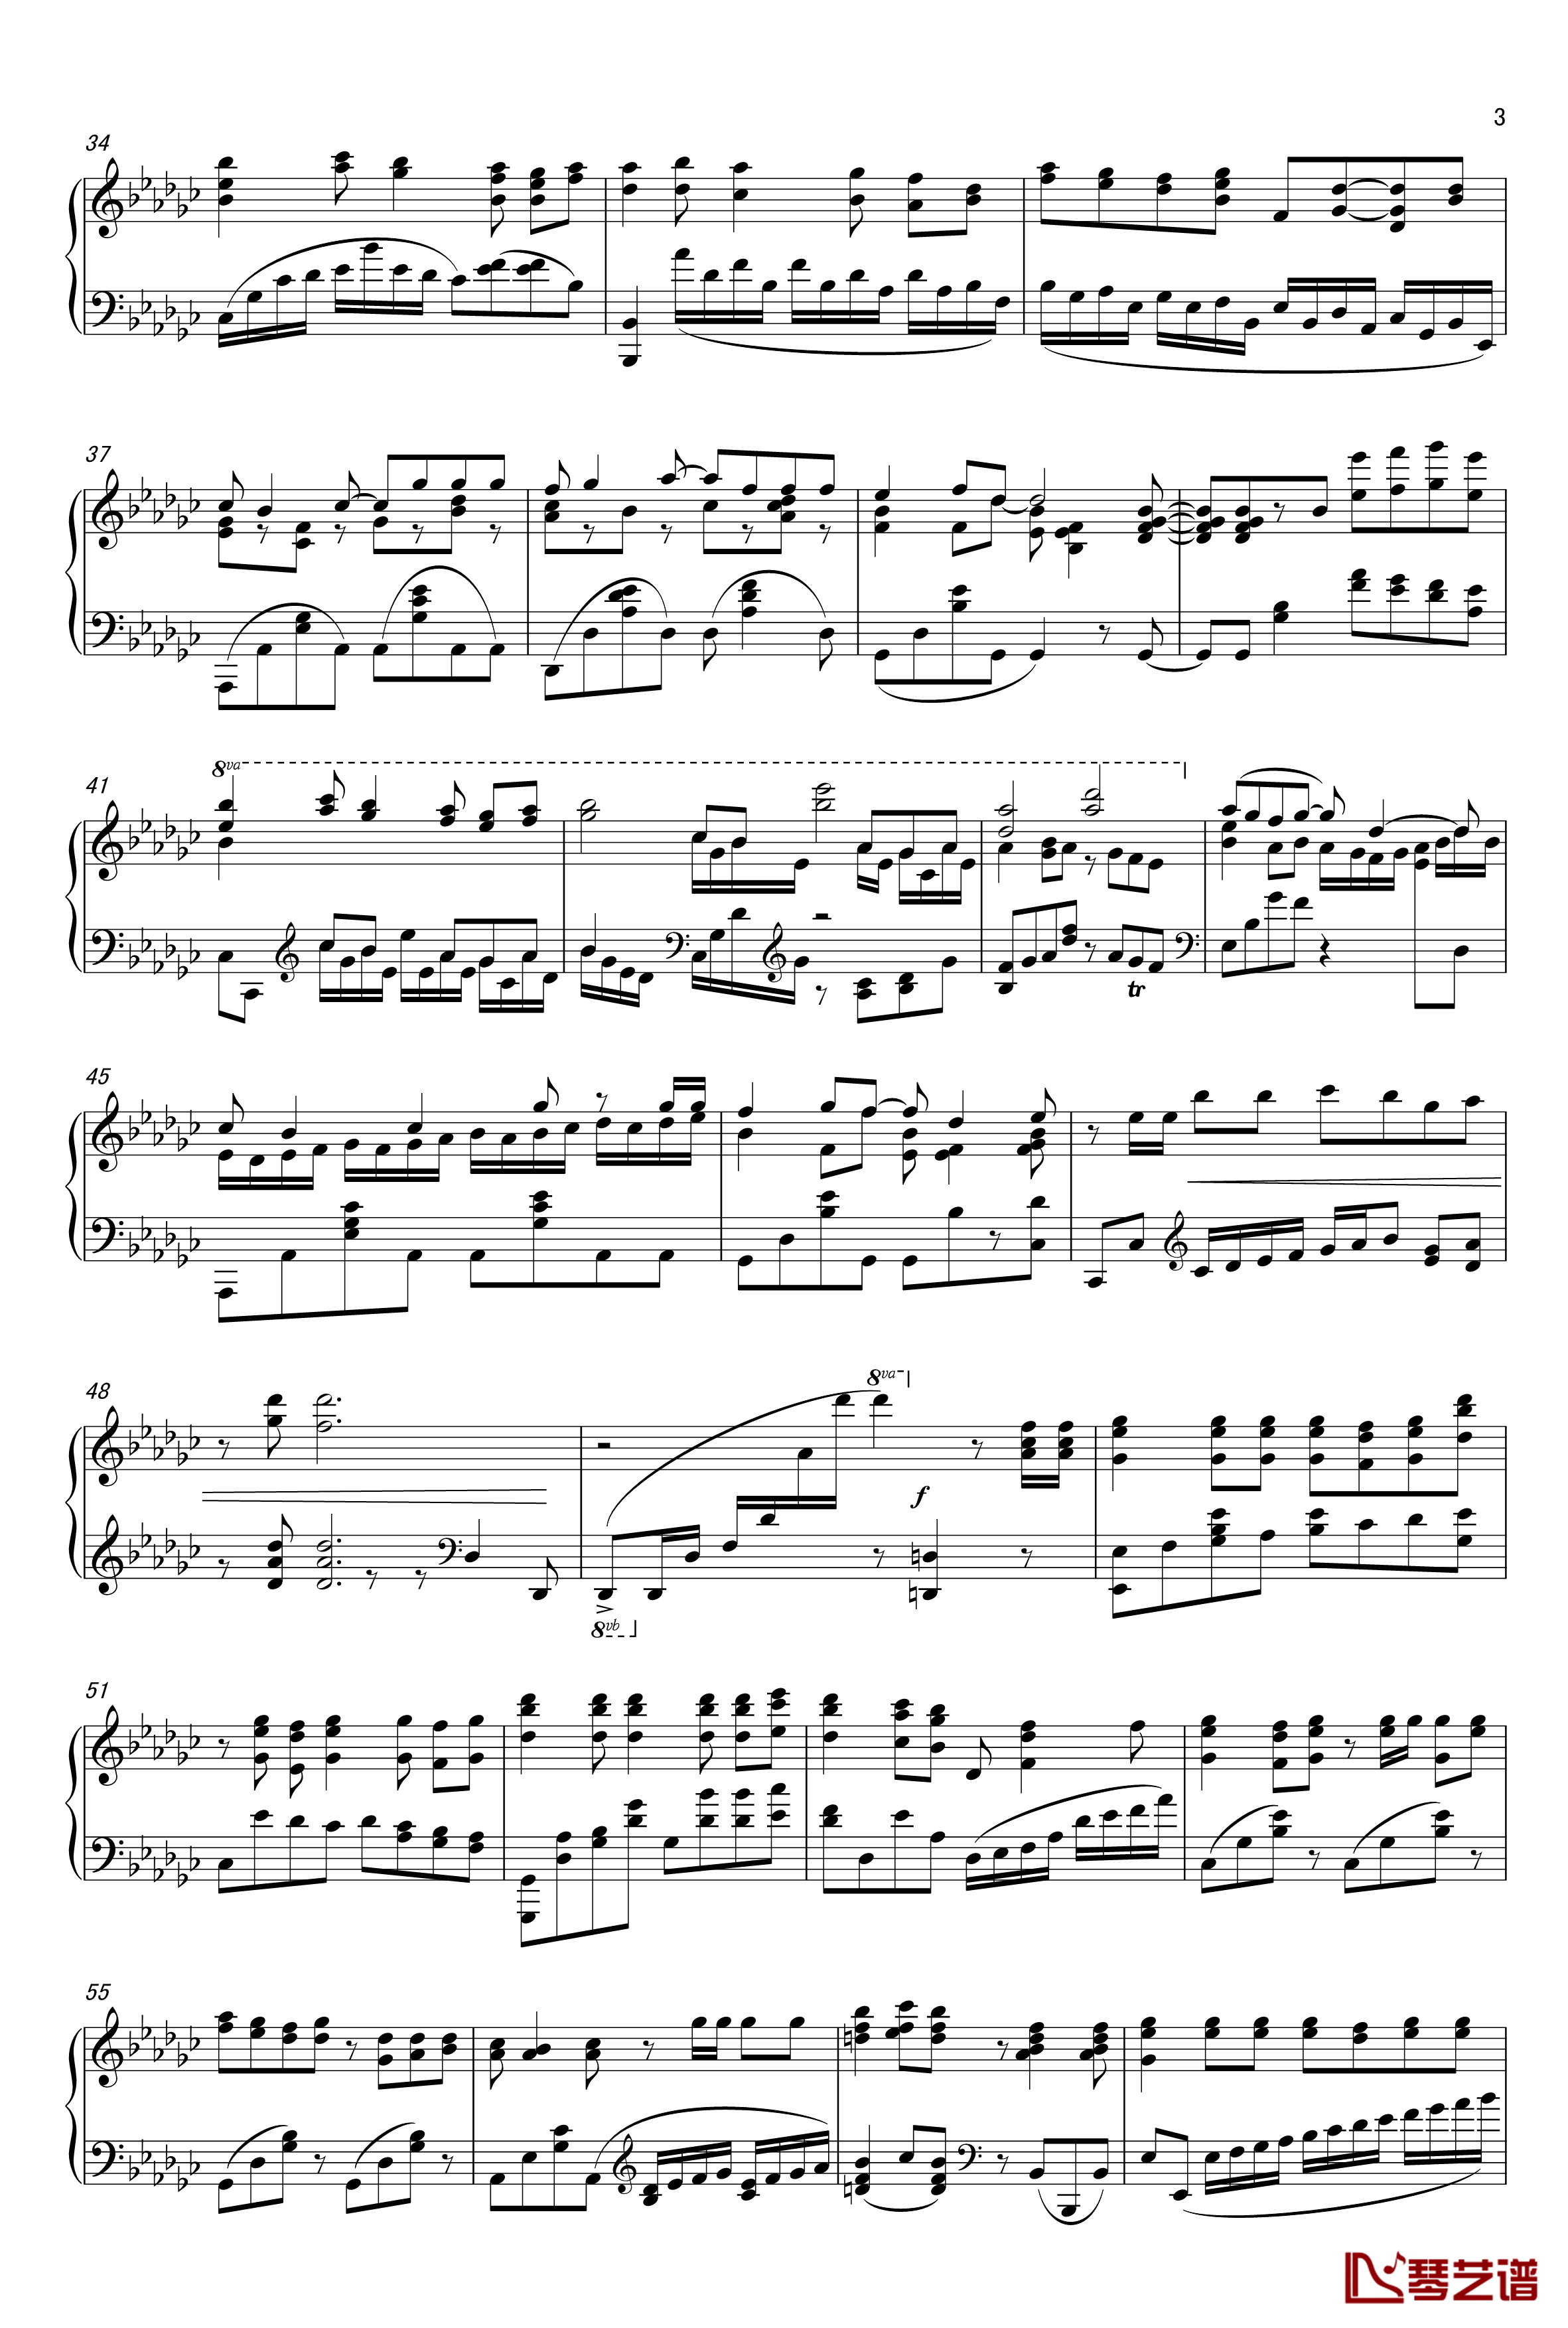 ロミオとシンデレラ钢琴谱-初音未来3